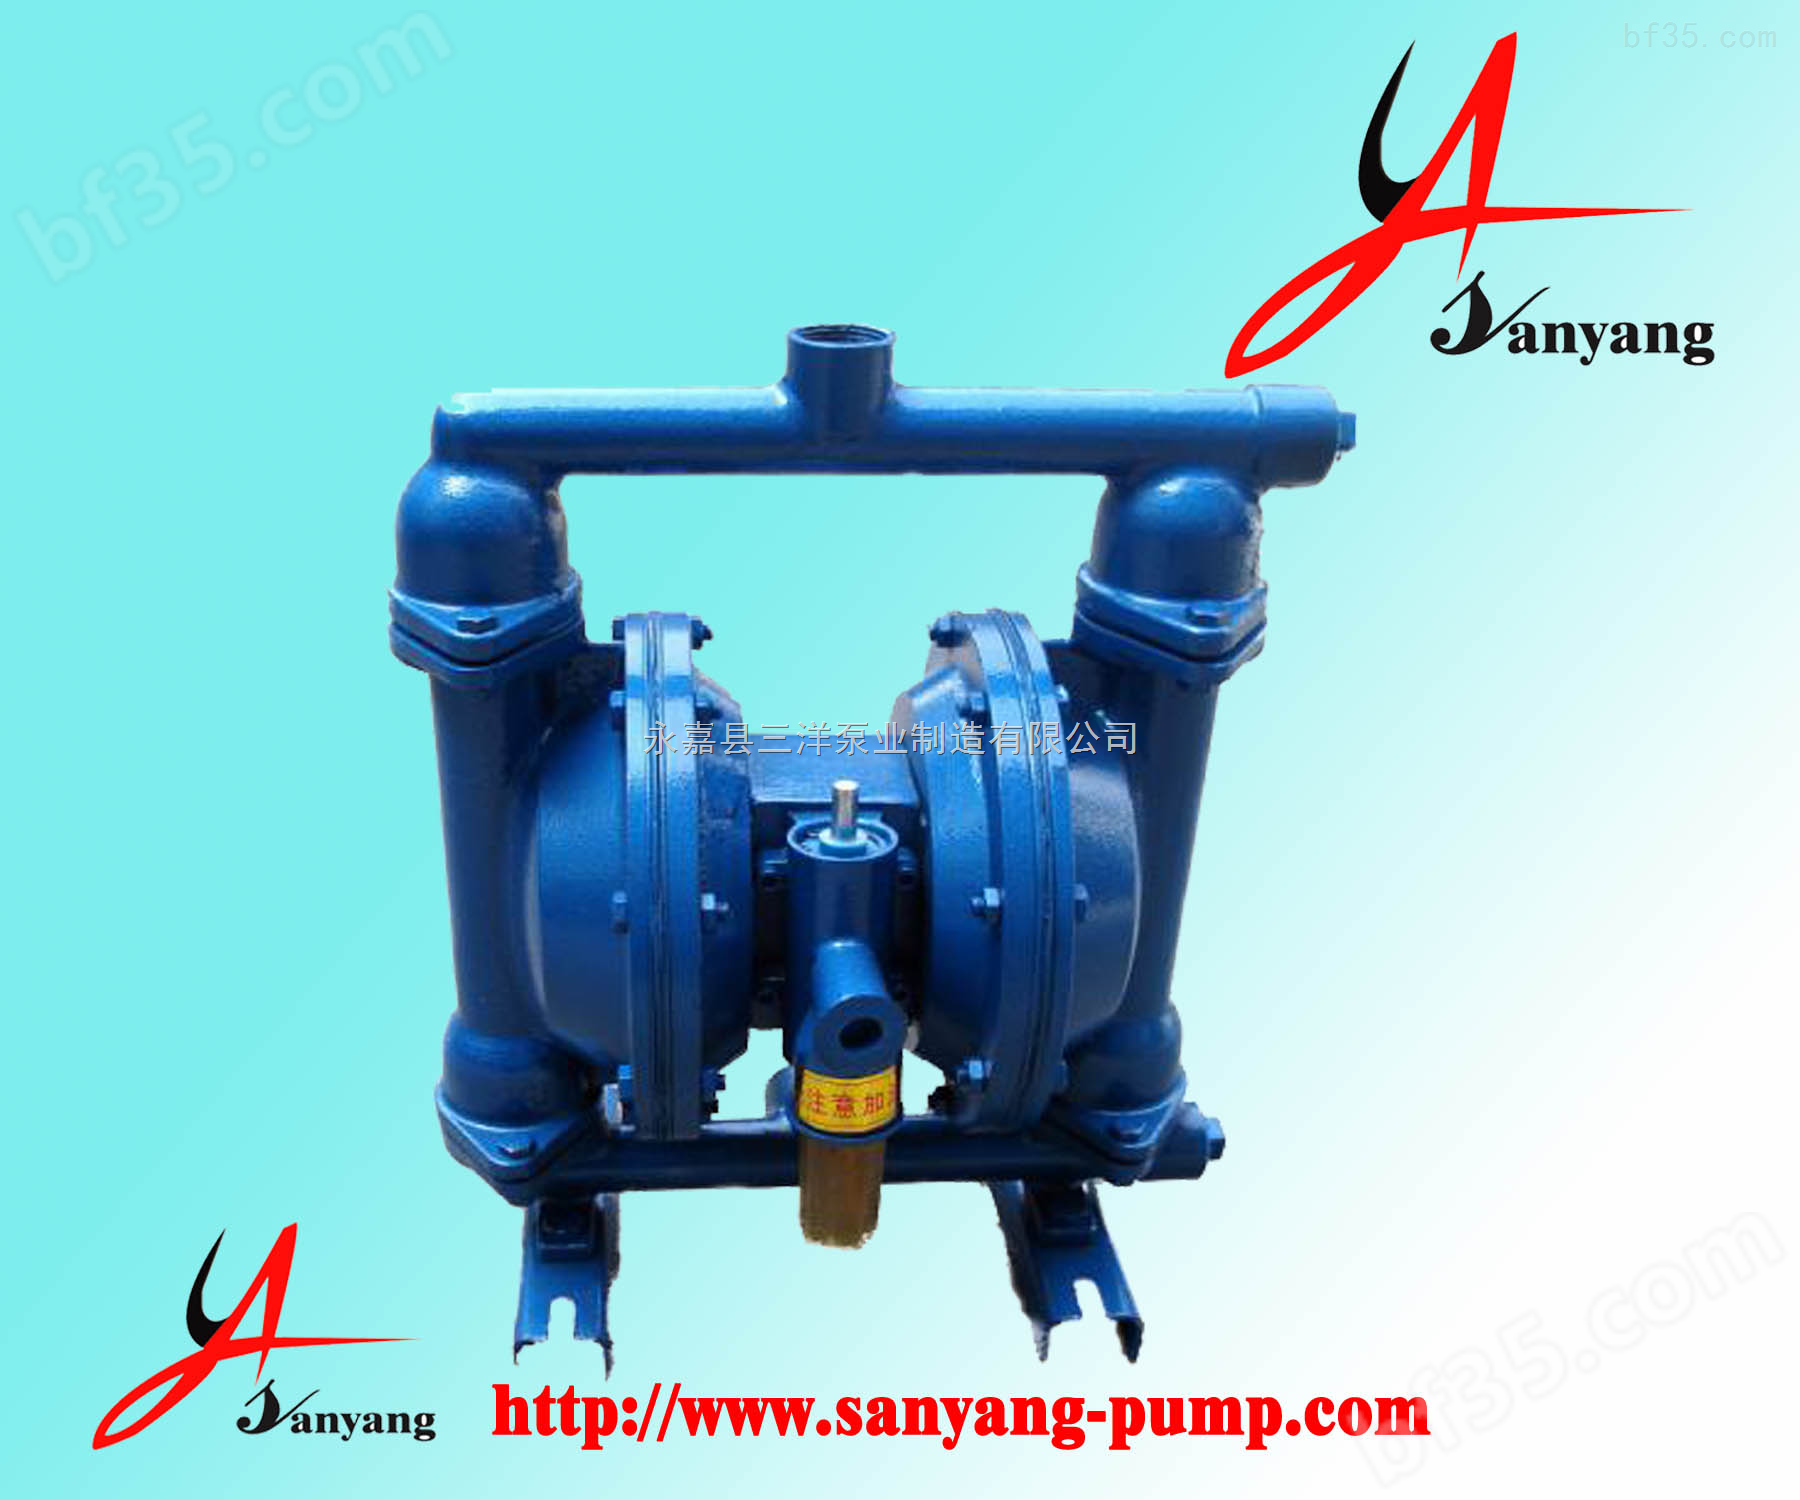 隔膜泵厂家,QBY立式气动隔膜泵,隔膜泵材质,隔膜泵用途